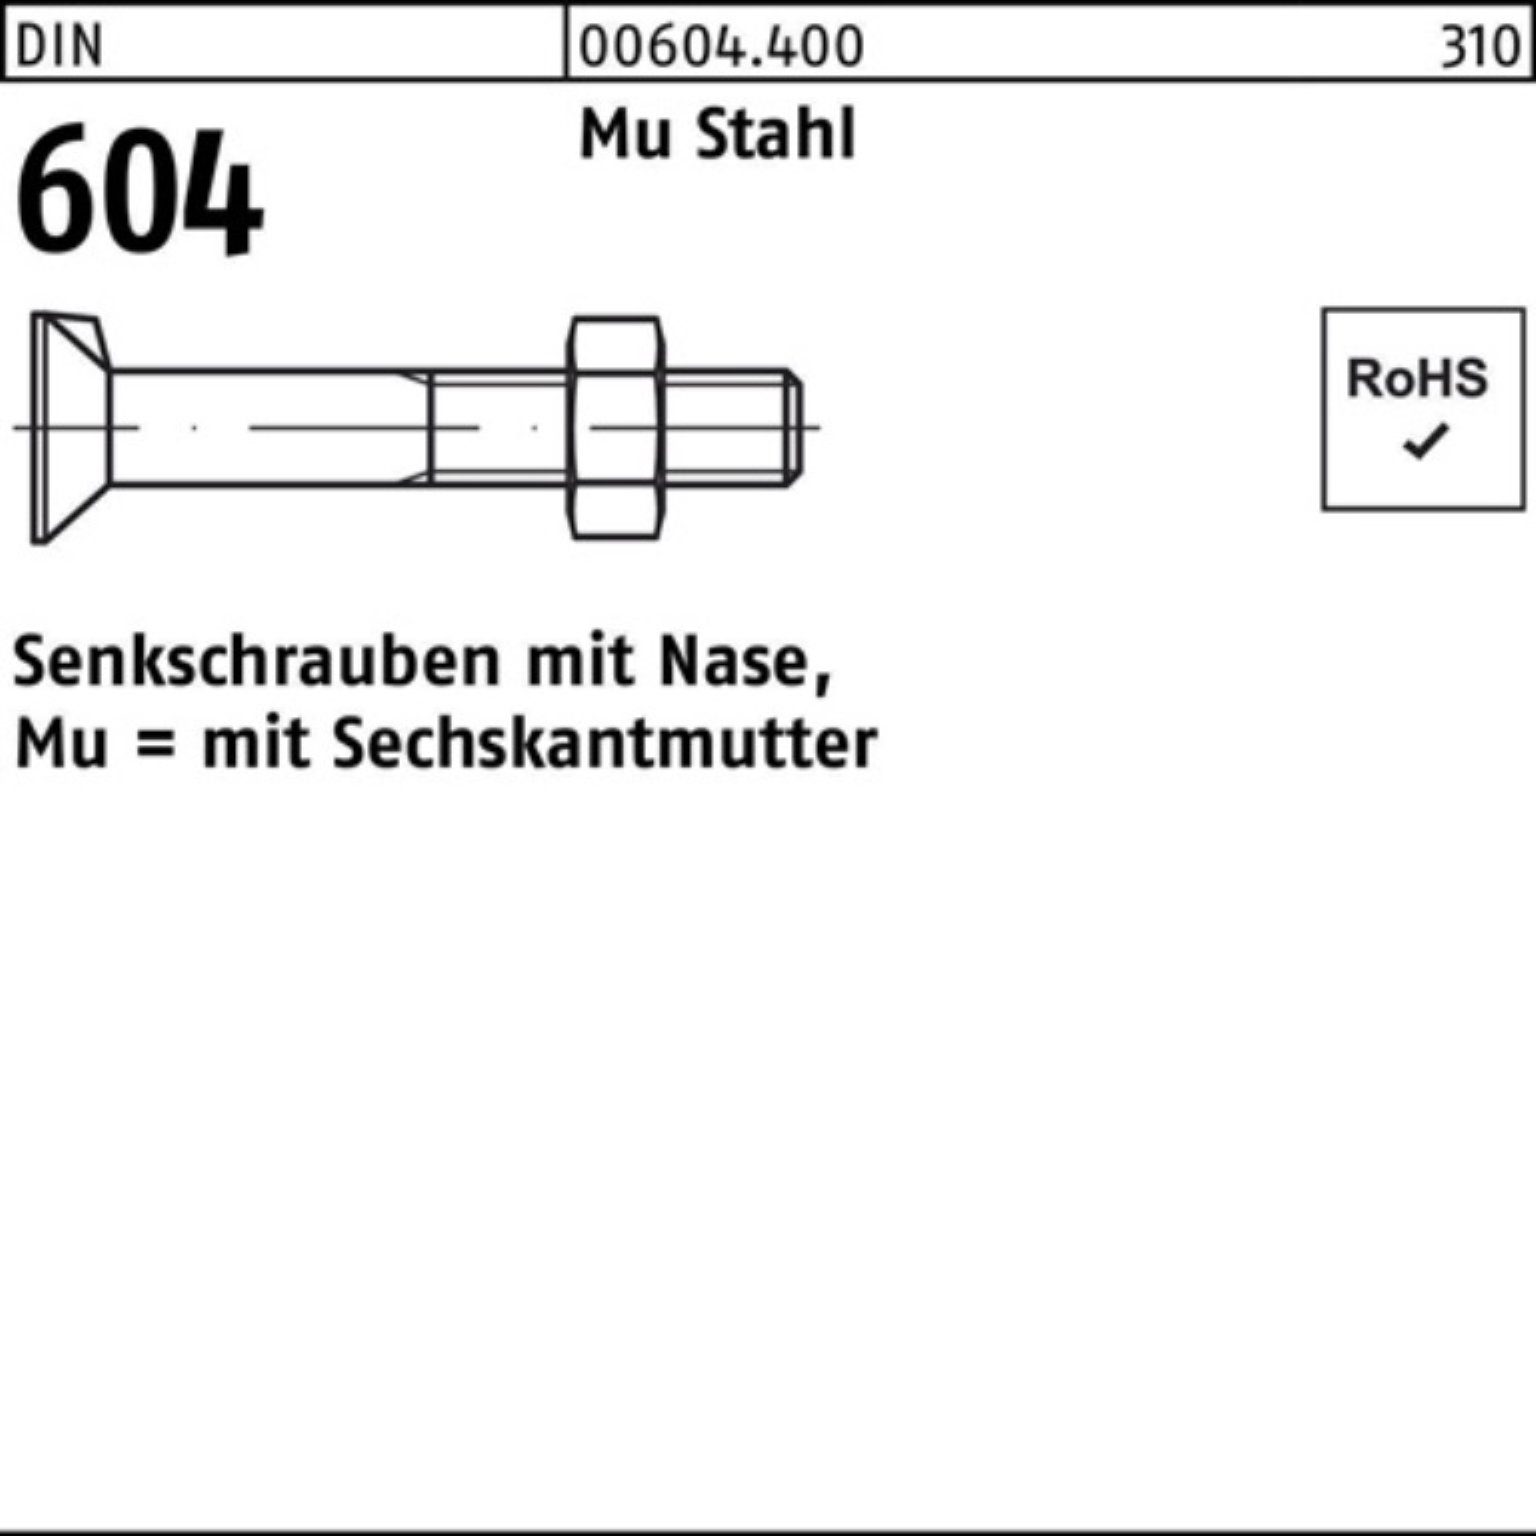 Senkschraube Senkschraube Pack 4.6 20 Mu 20 Stahl Nase/6-ktmutter Reyher 604 M8x 200er DIN